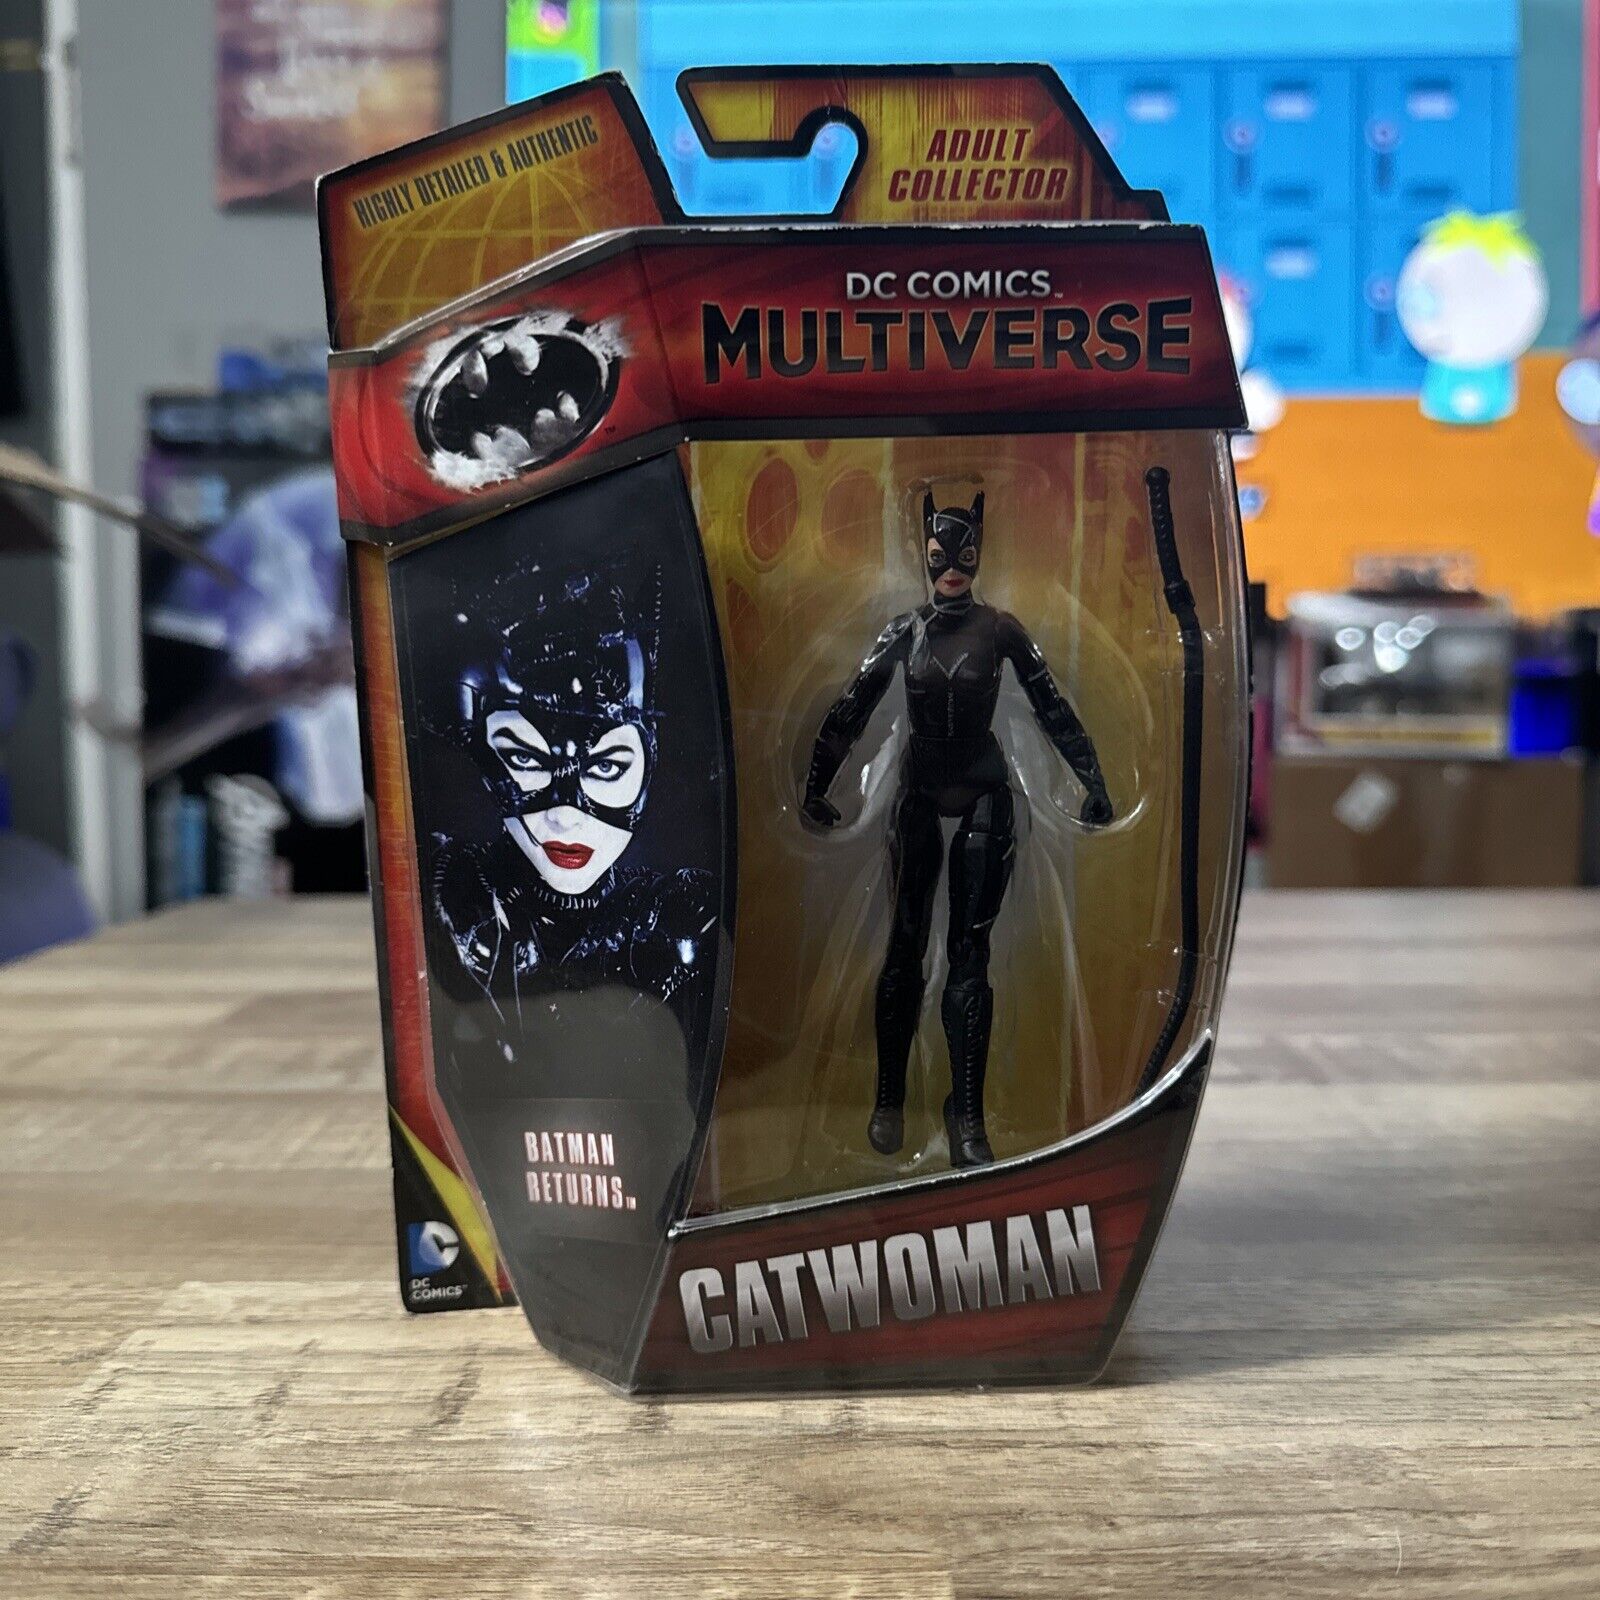 CATWOMAN Michelle Pfeiffer DC Comics Multiverse Batman Returns Action Figure NEW